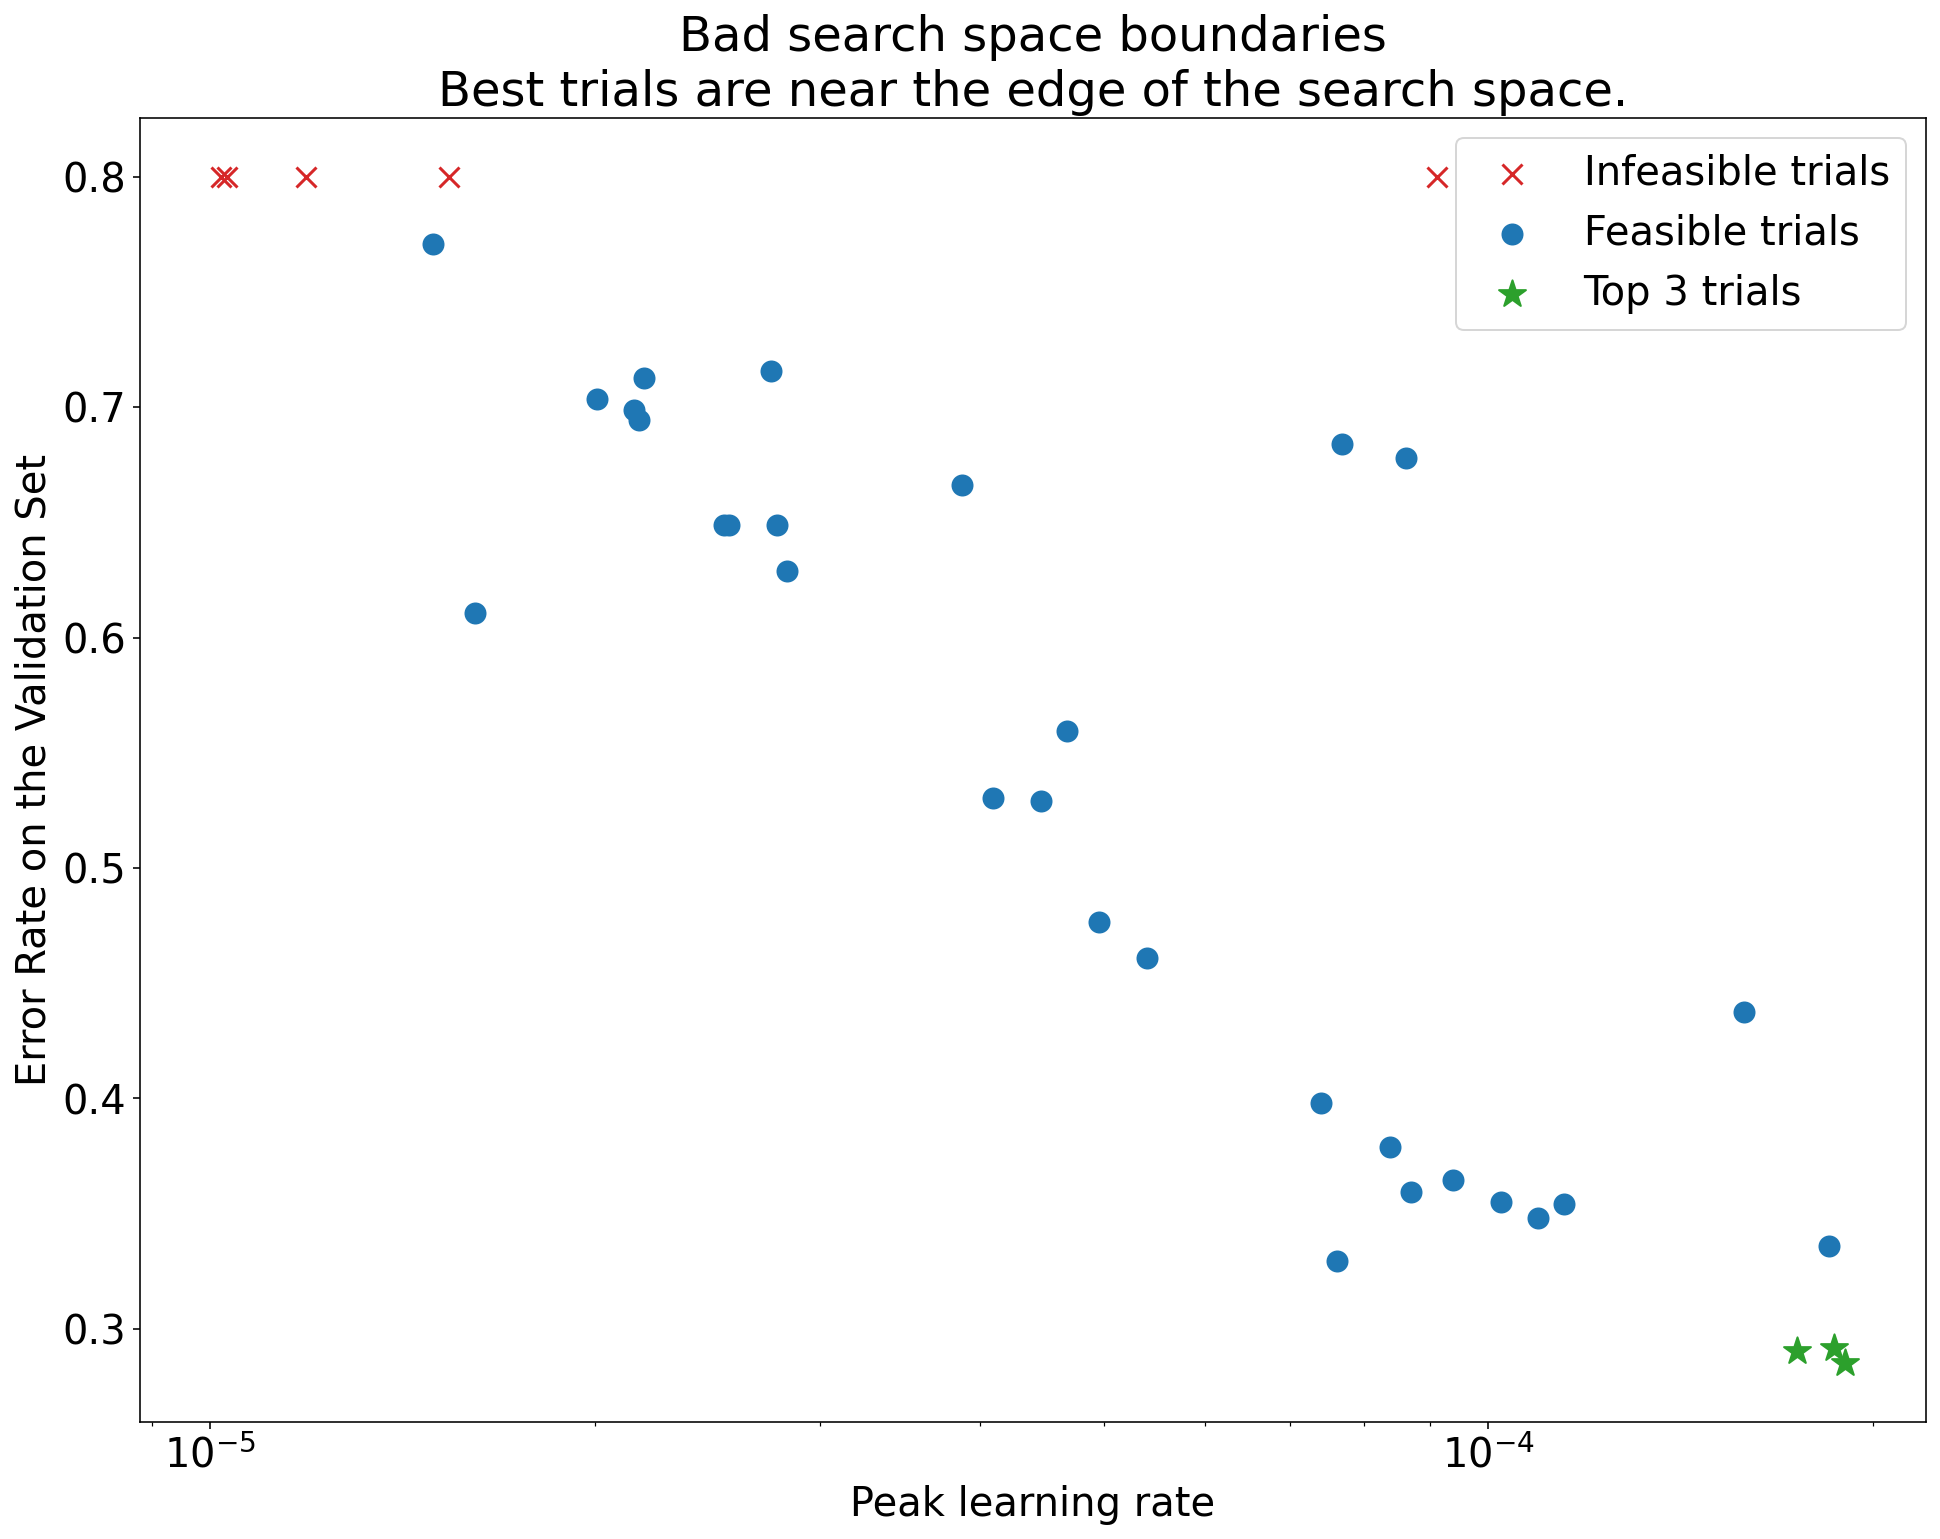 نمودار میزان خطا در مجموعه اعتبارسنجی (محور y) در مقابل نرخ یادگیری اوج (محور x) که مرزهای فضای جستجوی بد را نشان می‌دهد. در این نمودار، بهترین آزمایش‌ها (کمترین میزان خطا) نزدیک به لبه فضای جستجو هستند، جایی که اوج نرخ یادگیری بالاترین است.